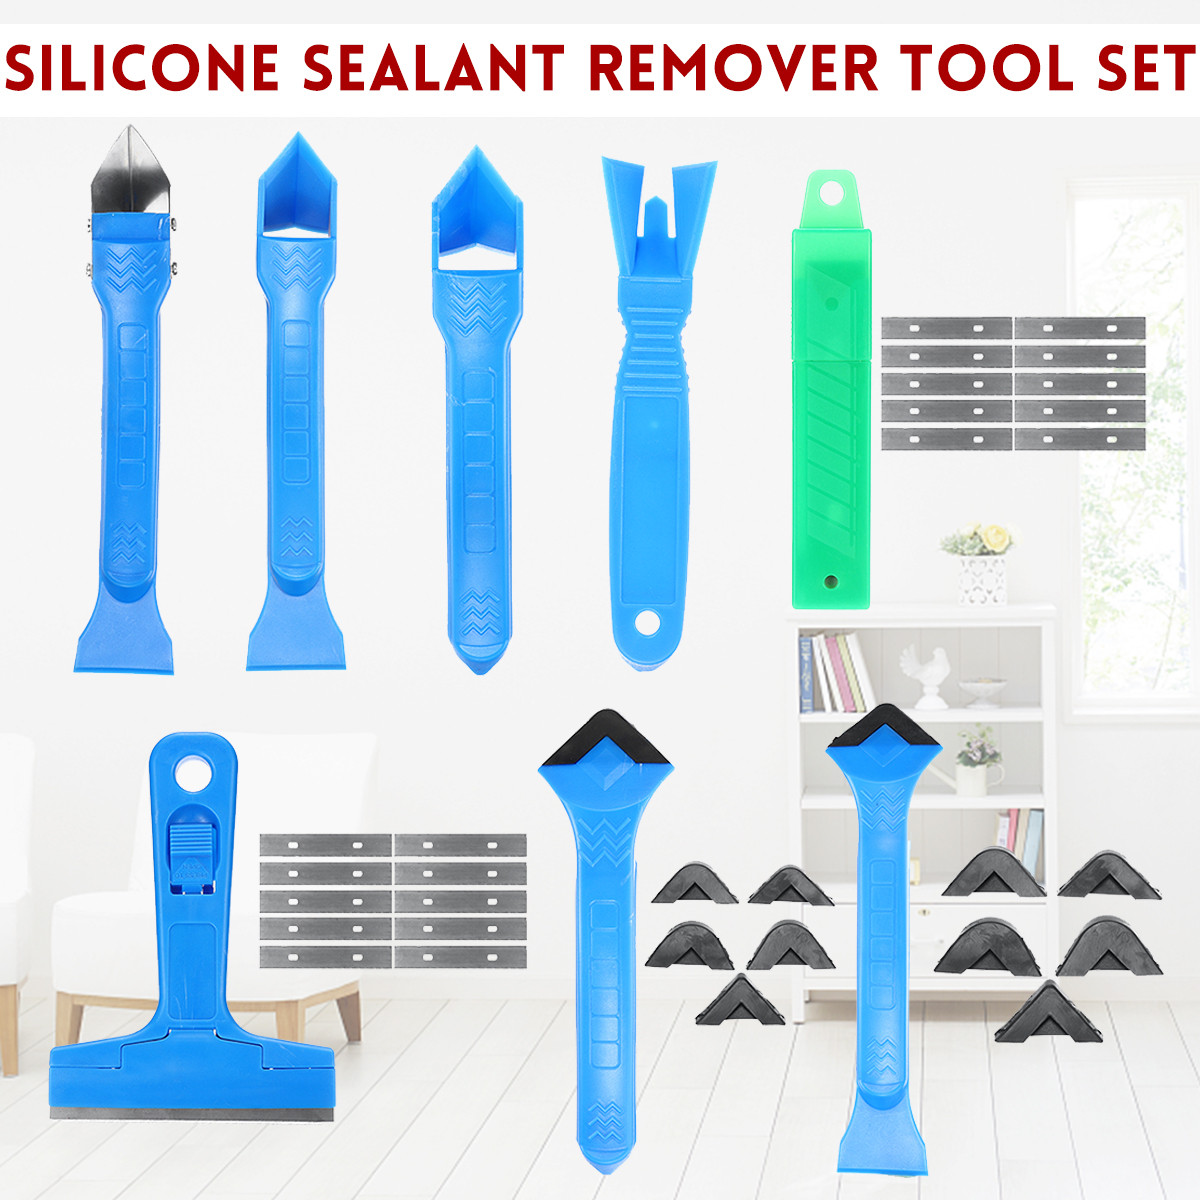 Silicone-Sealant-Remover-Scraper-Tools-Home-Applicator-Kit-3R6R10R13R17R-1648110-2